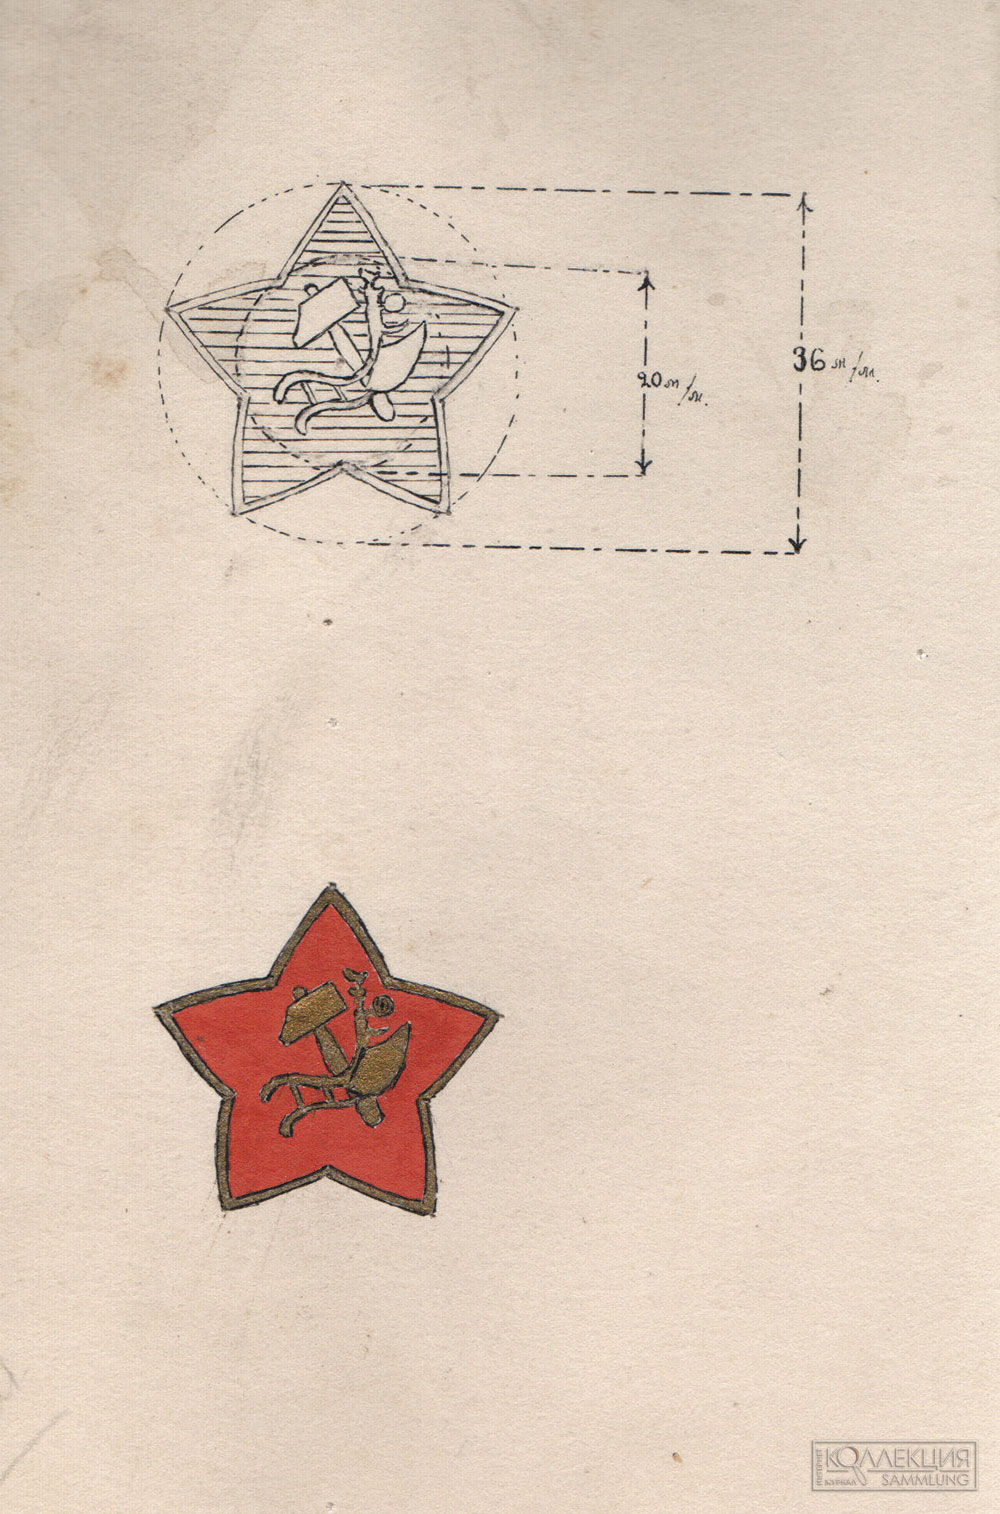 Рисунок «значка-кокарды» к проекту приказа Наркомвоена, на основе которого были распечатаны типографские варианты (РГВА. Ф. 47 Оп. 7 Д. 3 Л. 47)